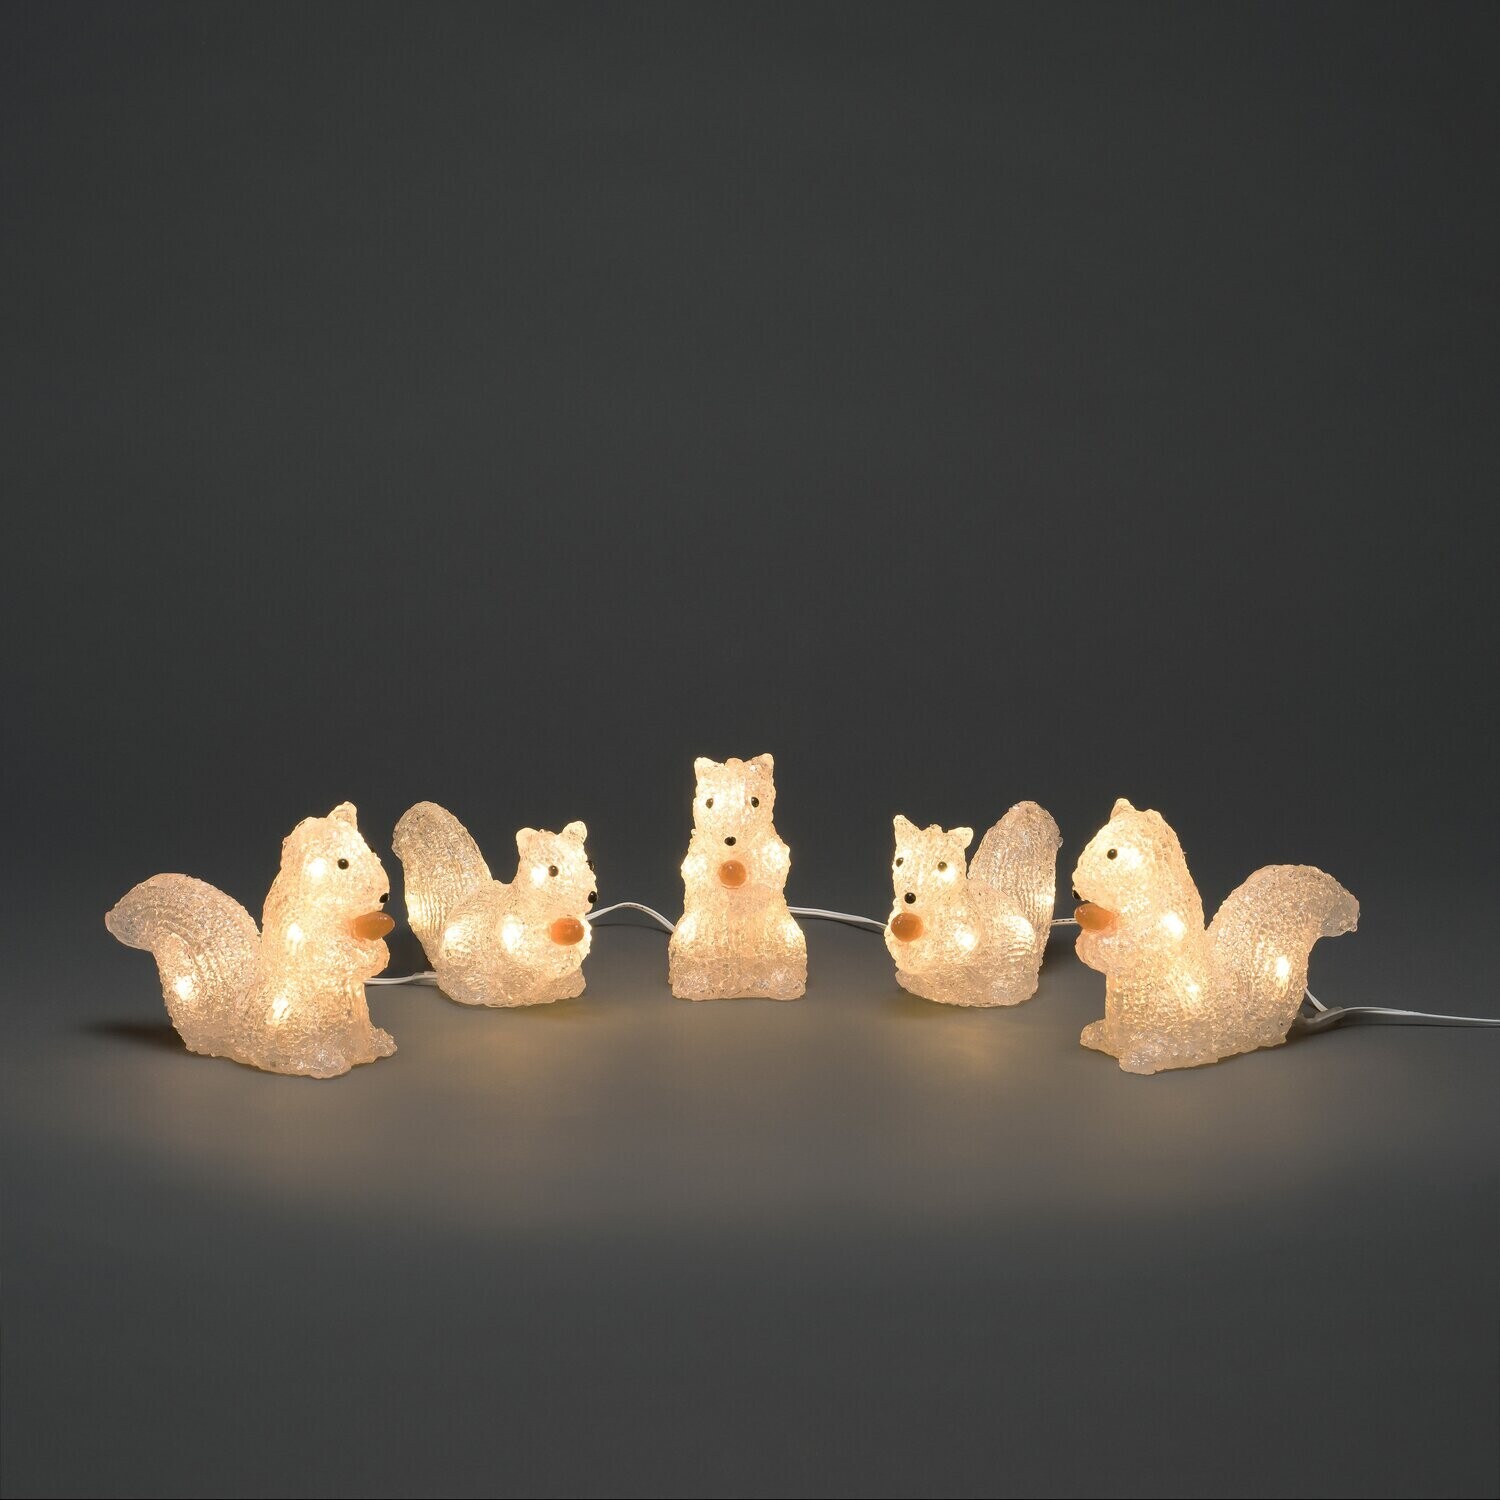 Konstsmide LED-Lichterkette Eichhörnchen warmweiß € ab 35,00 bei Preisvergleich | (6287-103)